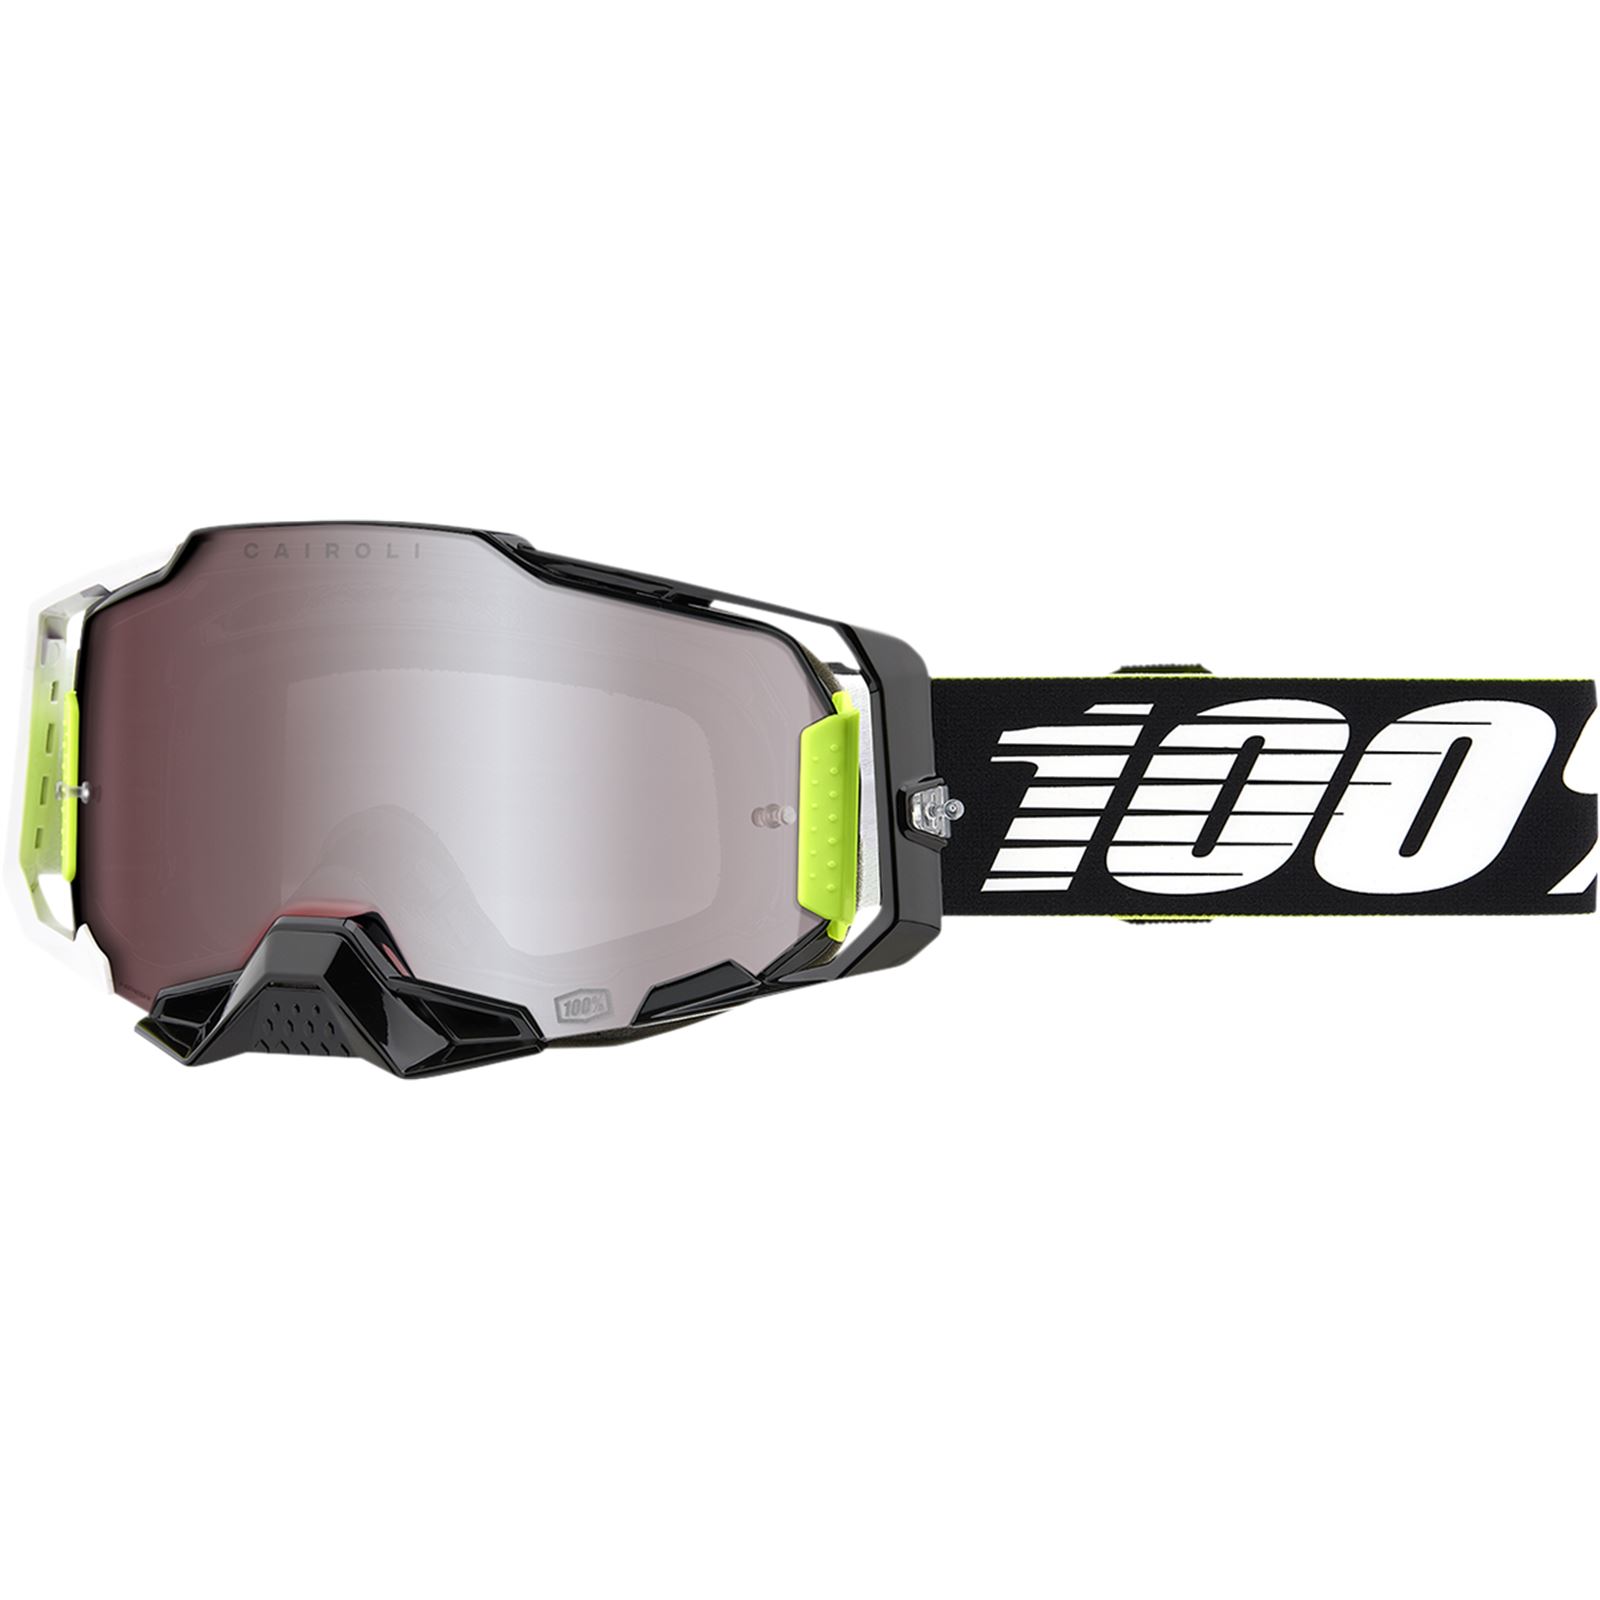 Buy Micnaron Motorcycle Detachable Goggles, 2 Parts Outdoor Ski